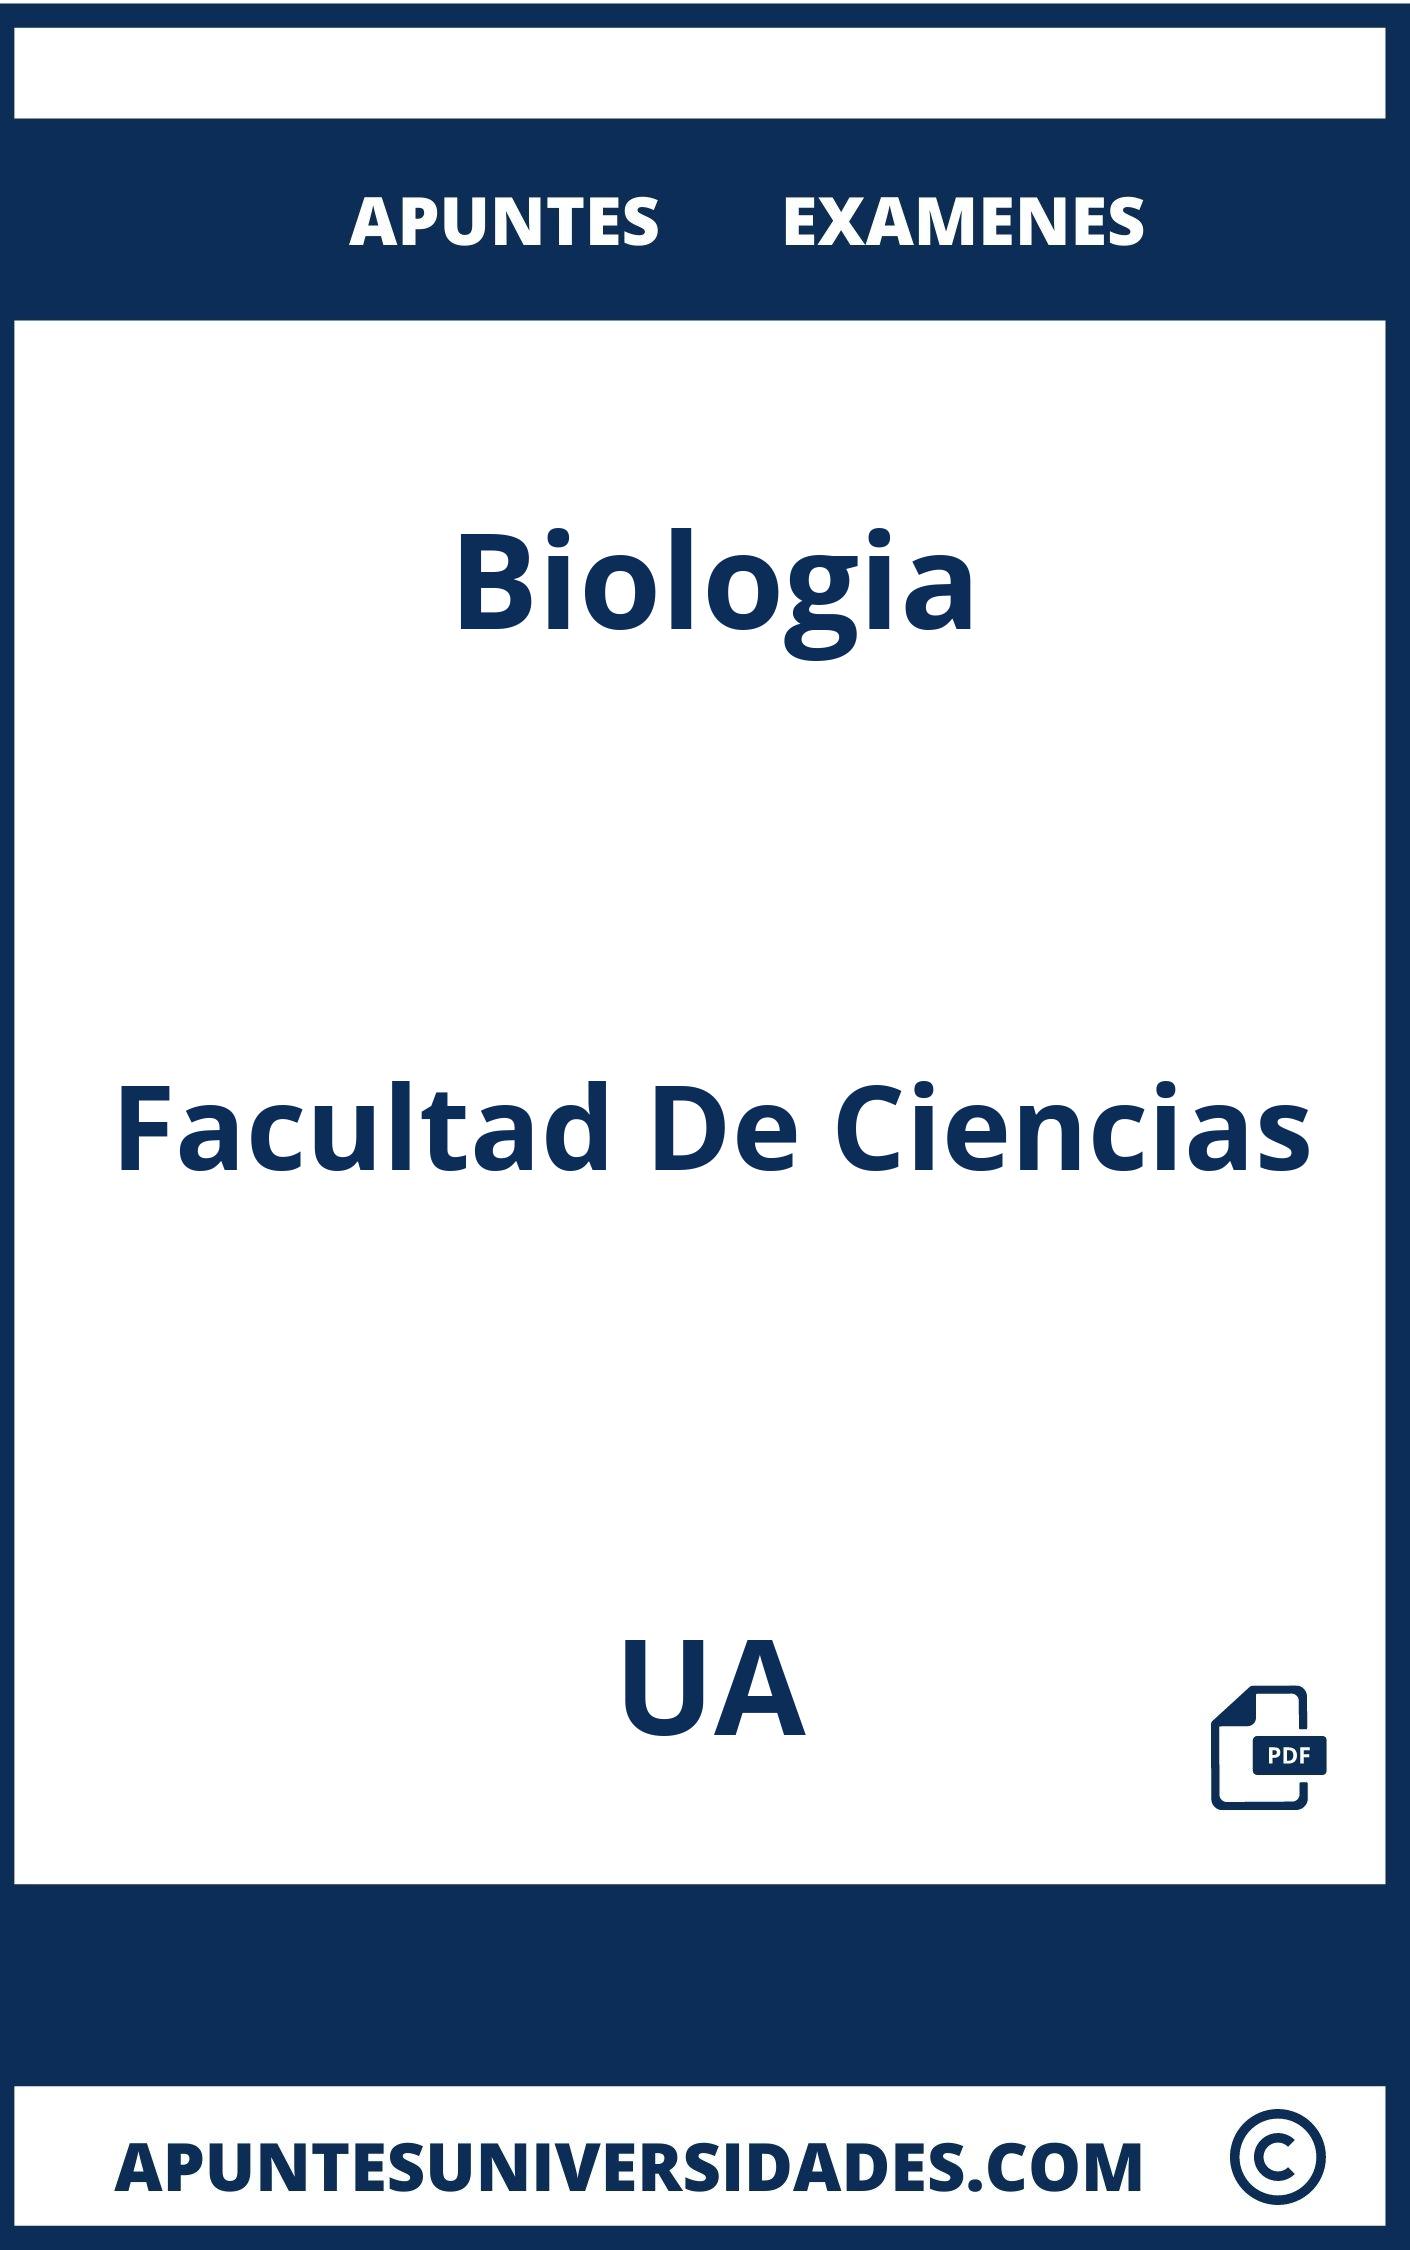 Apuntes y Examenes Biologia UA